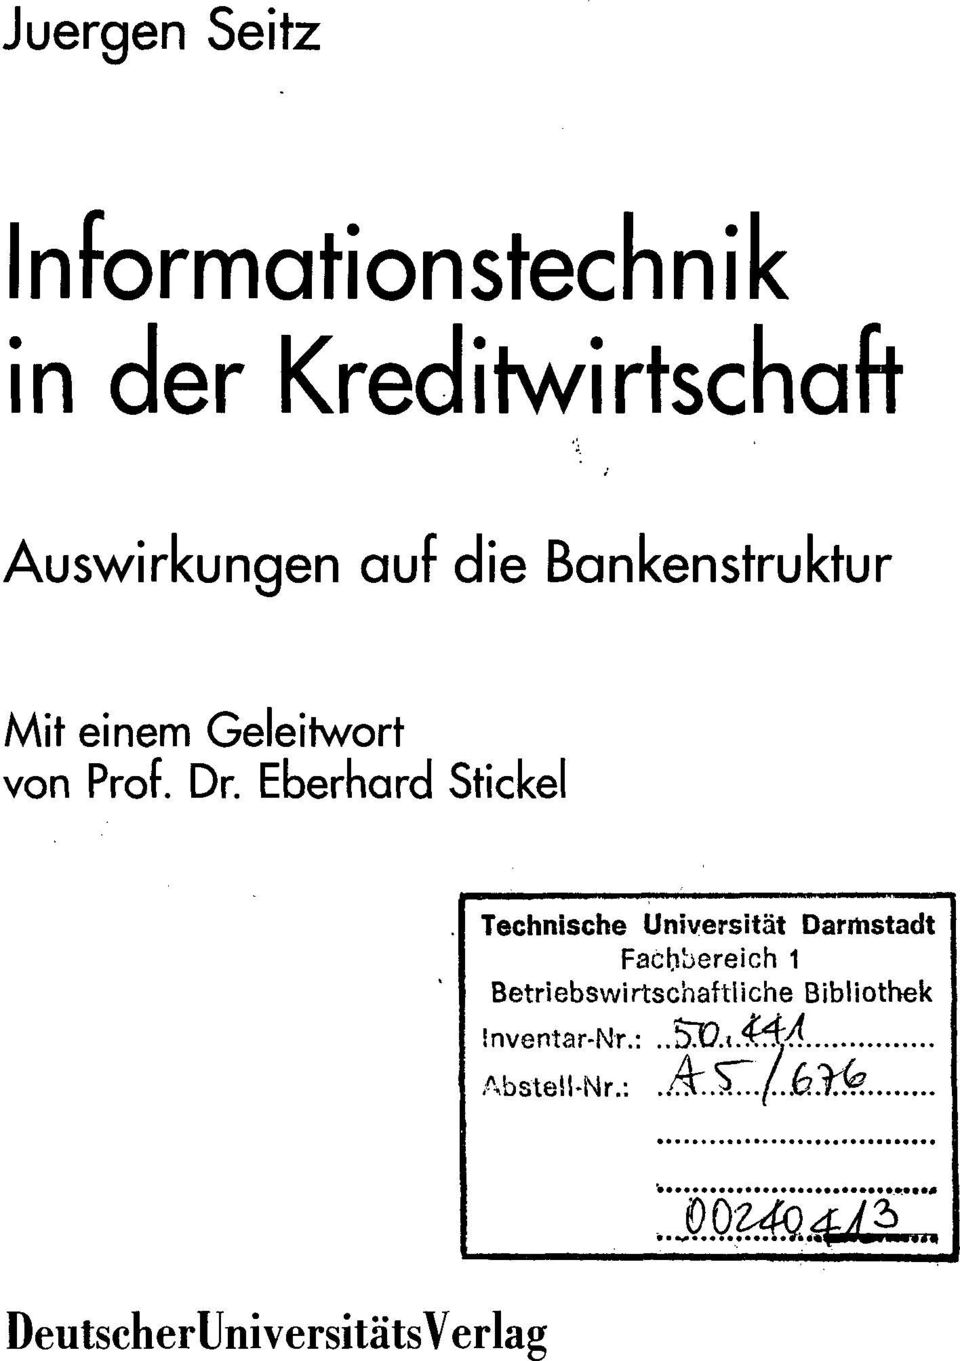 Eberhard Stickel Technische Universität Darrhstadt Fachbereich 1